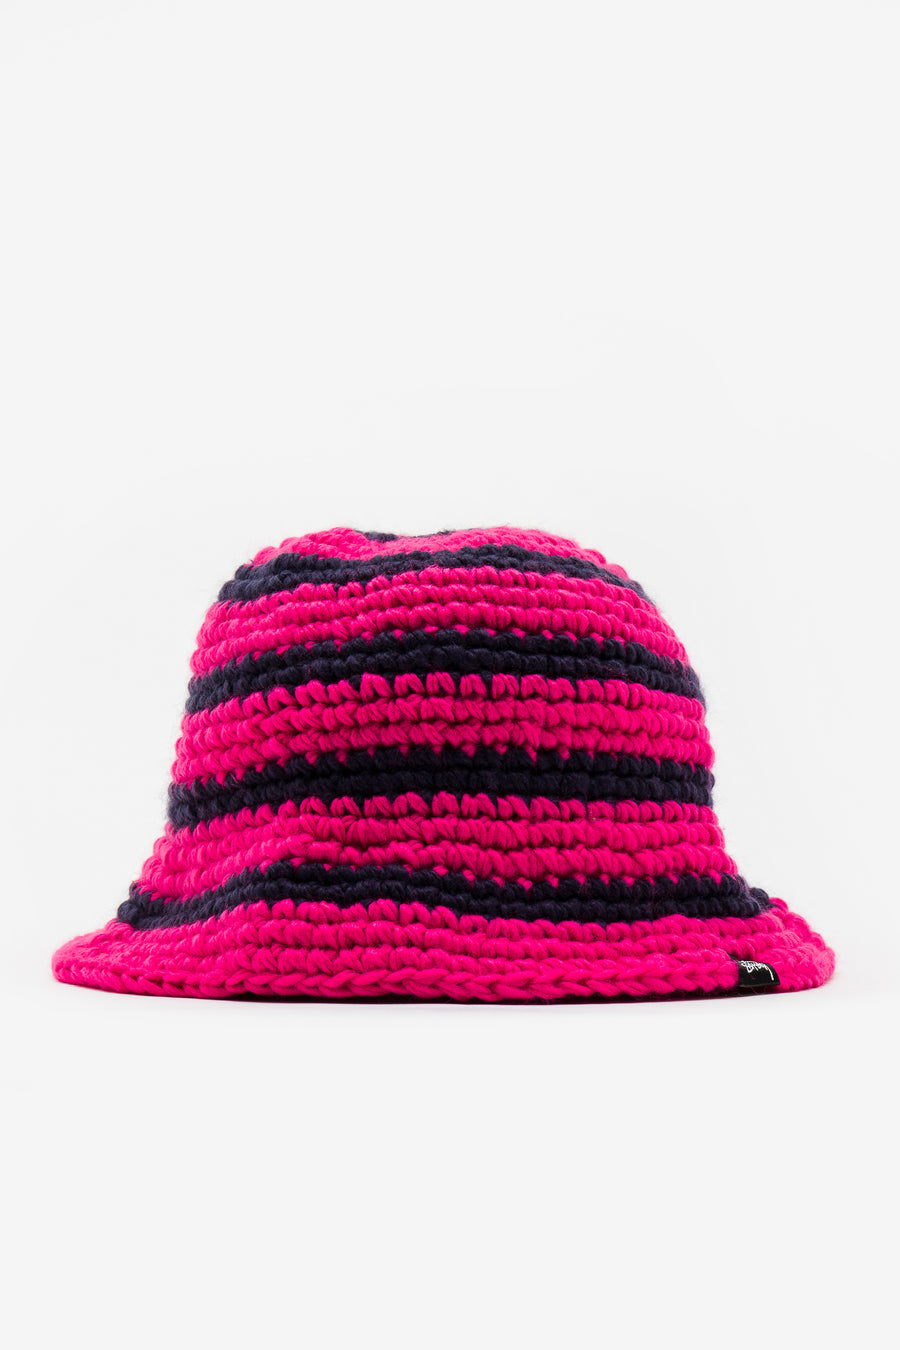 Stüssy - Swirl Knit Bucket Hat in Hot Pink - Notre